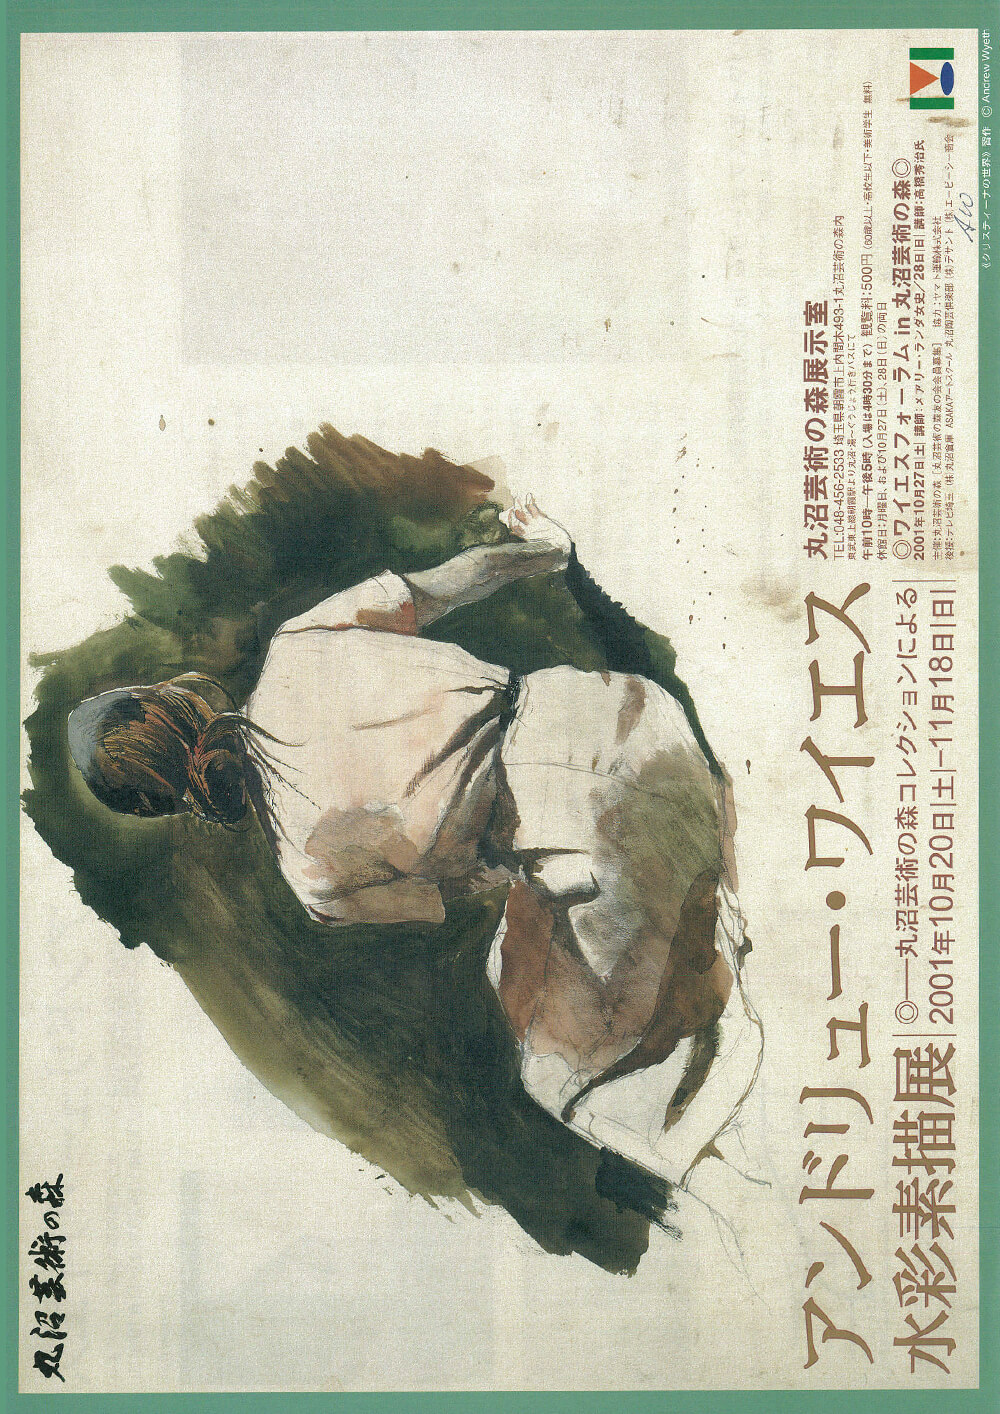 アンドリュー・ワイエス水彩素描展 ―丸沼芸術の森コレクションによる